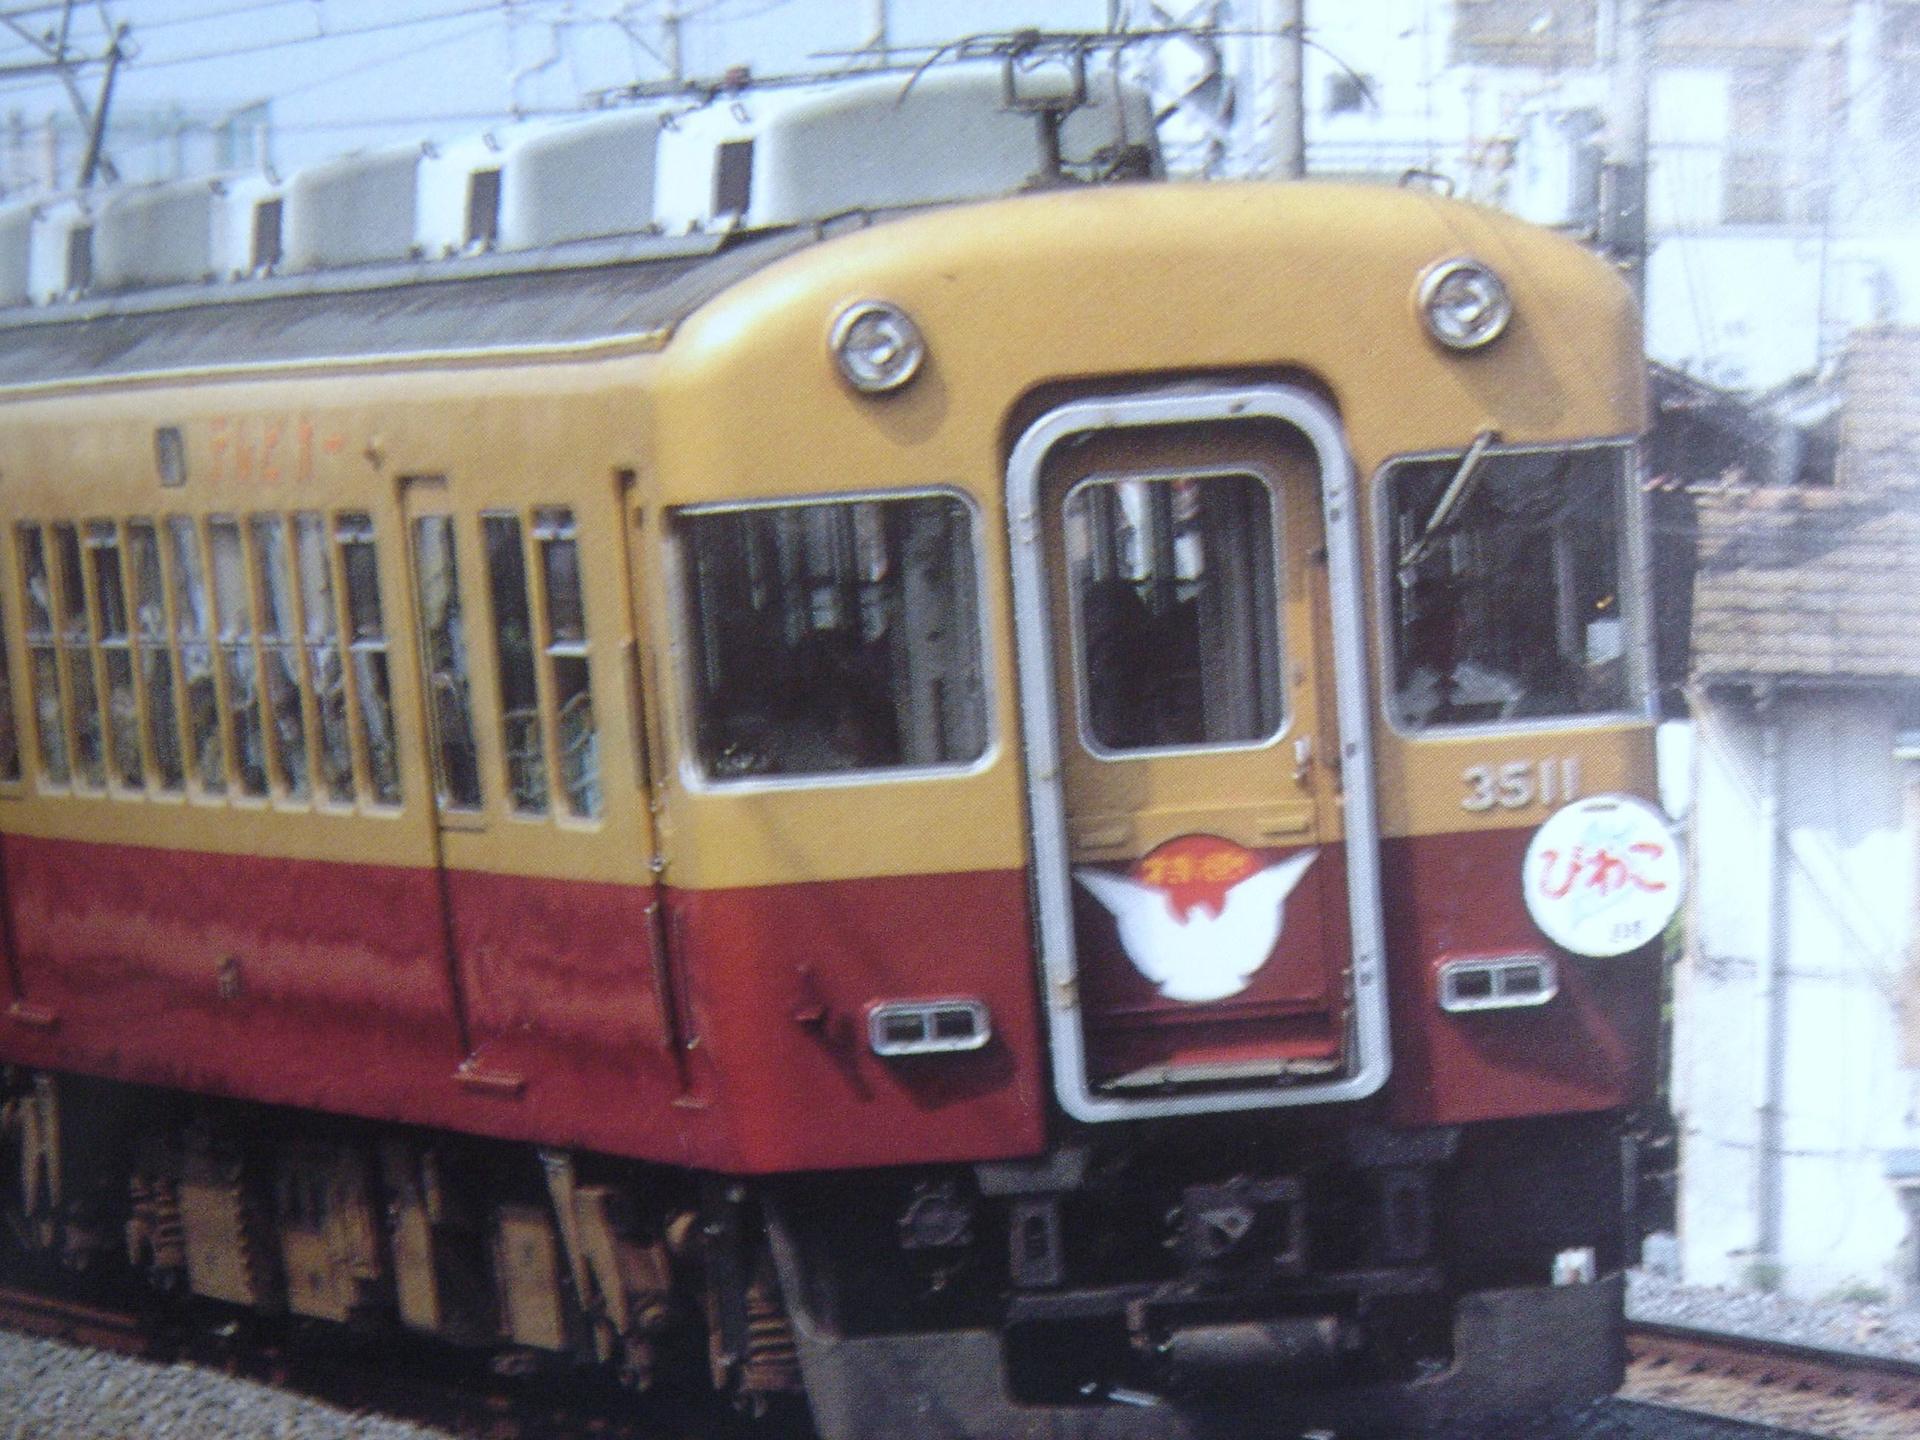 京阪電車旧３０００系、３月に引退: 電光石火の申し子のホビー